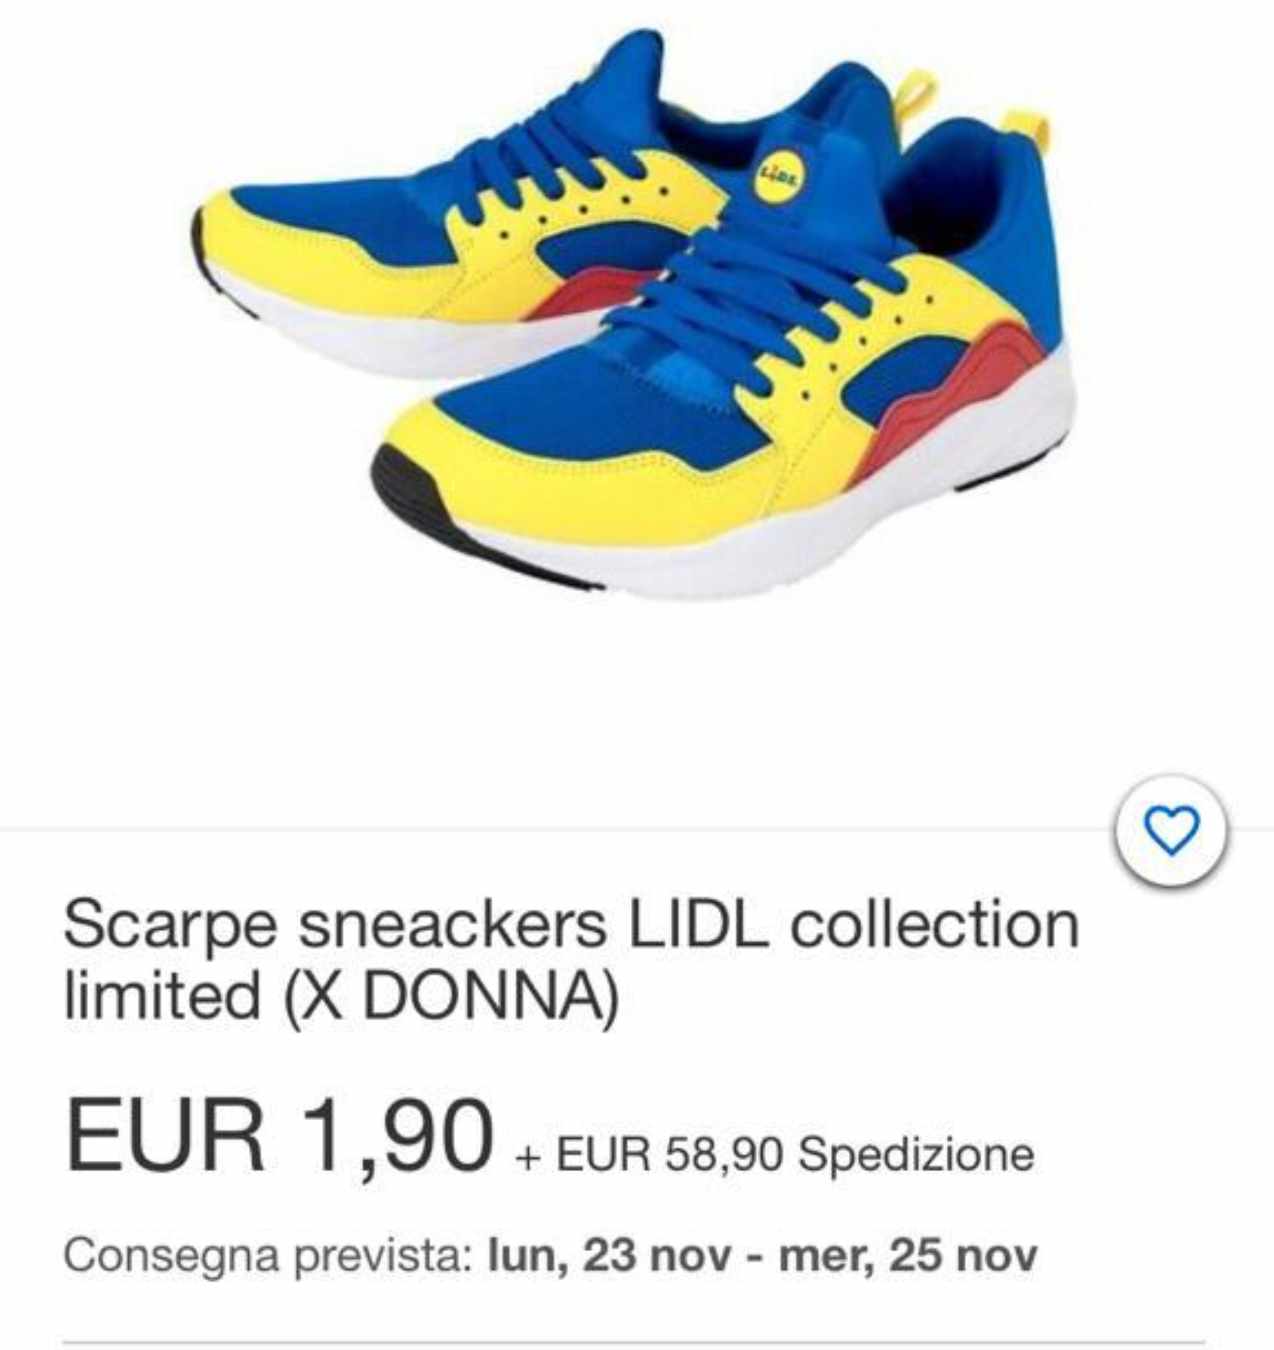 Scarpe Lidl, da 12,99 in negozio a 60 euro on line : cosa c'è sotto?